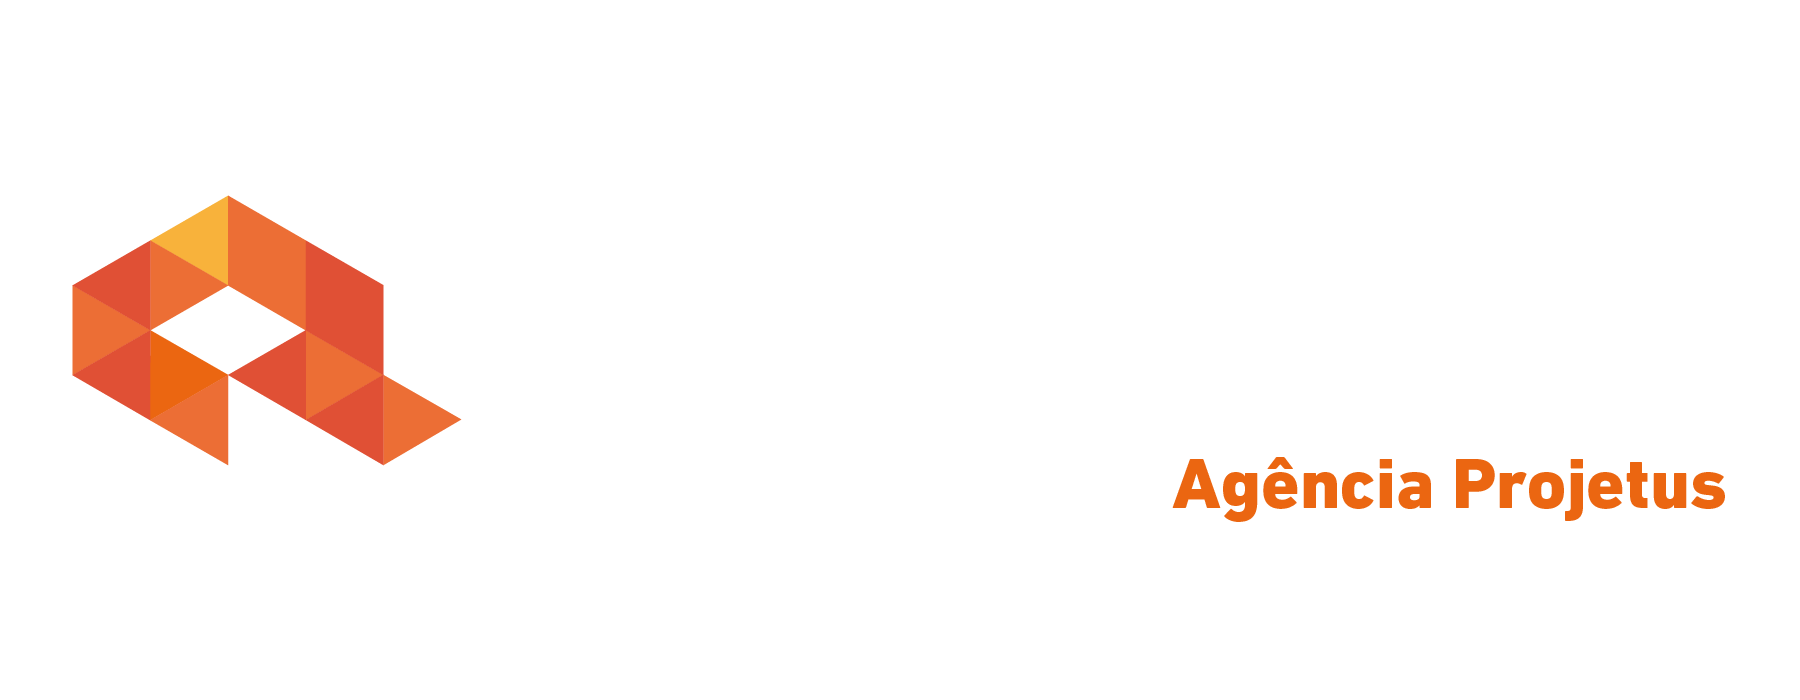 Logo crédito real Crédito Real Projetus